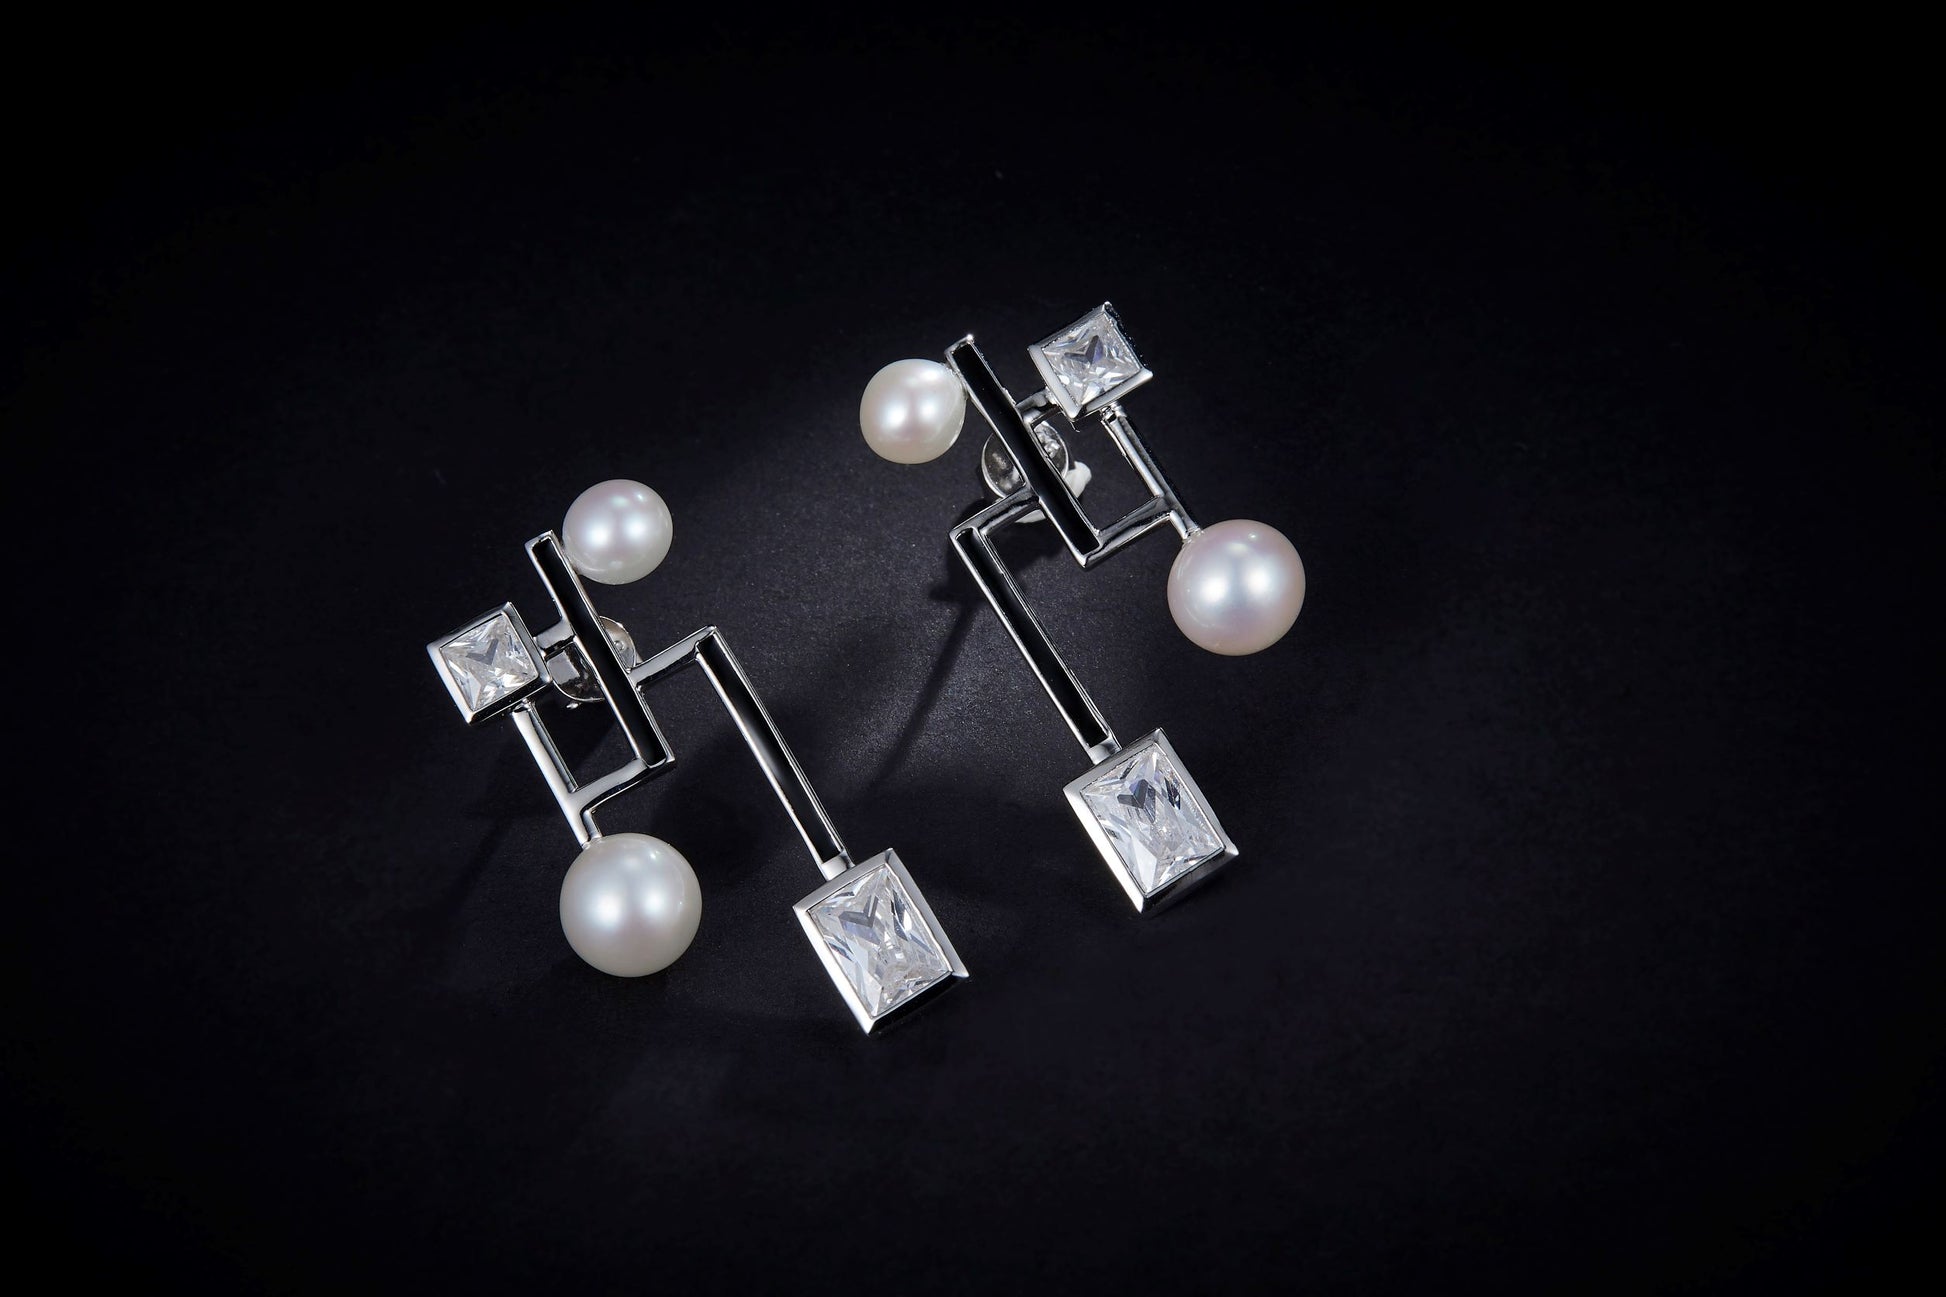 Geometric Figure Enamel with Pearl Silver Earrings for Women